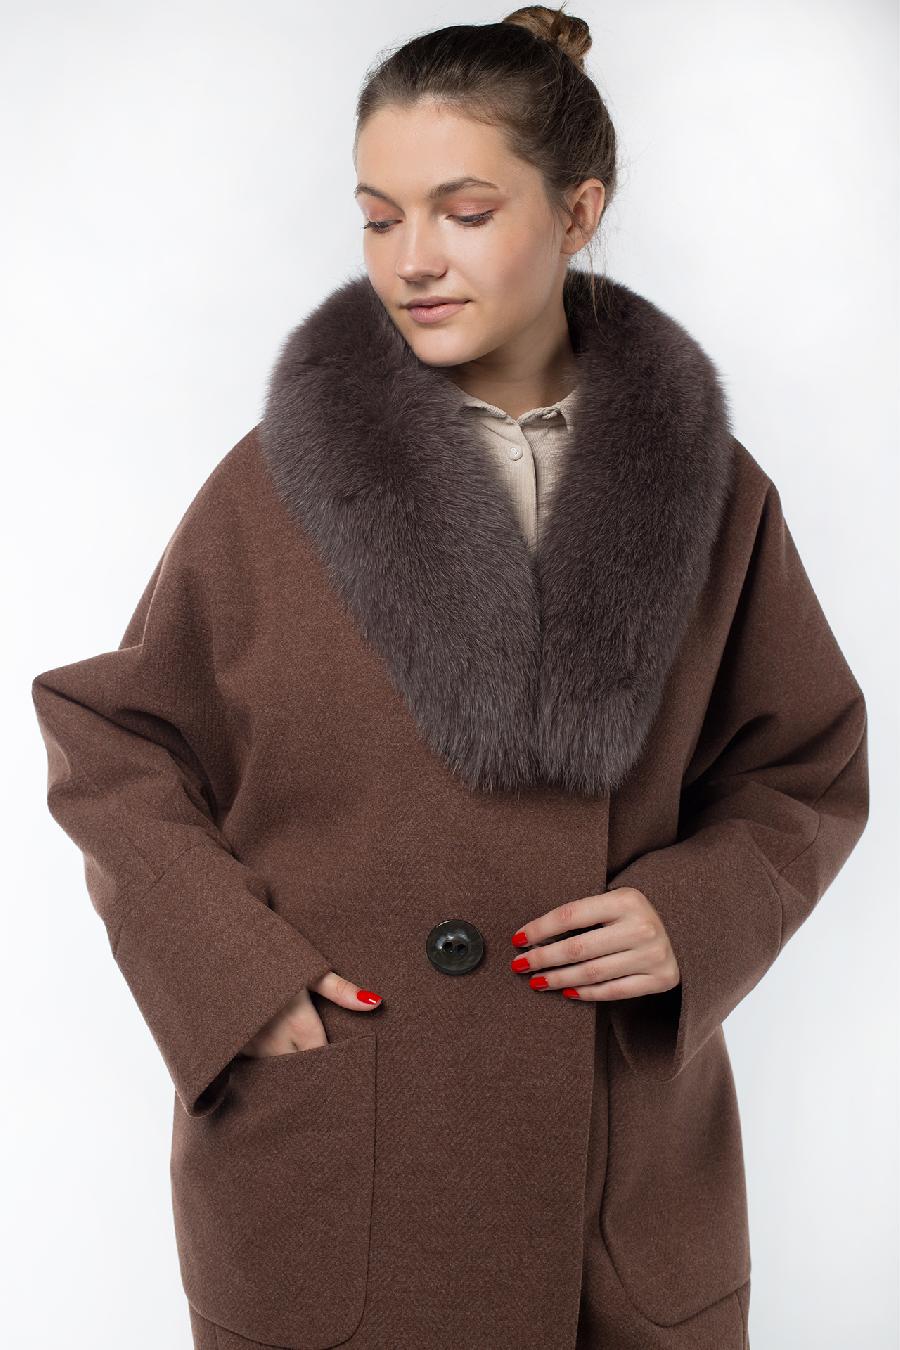 02-2913 Пальто женское утепленное Микроворса коричневый